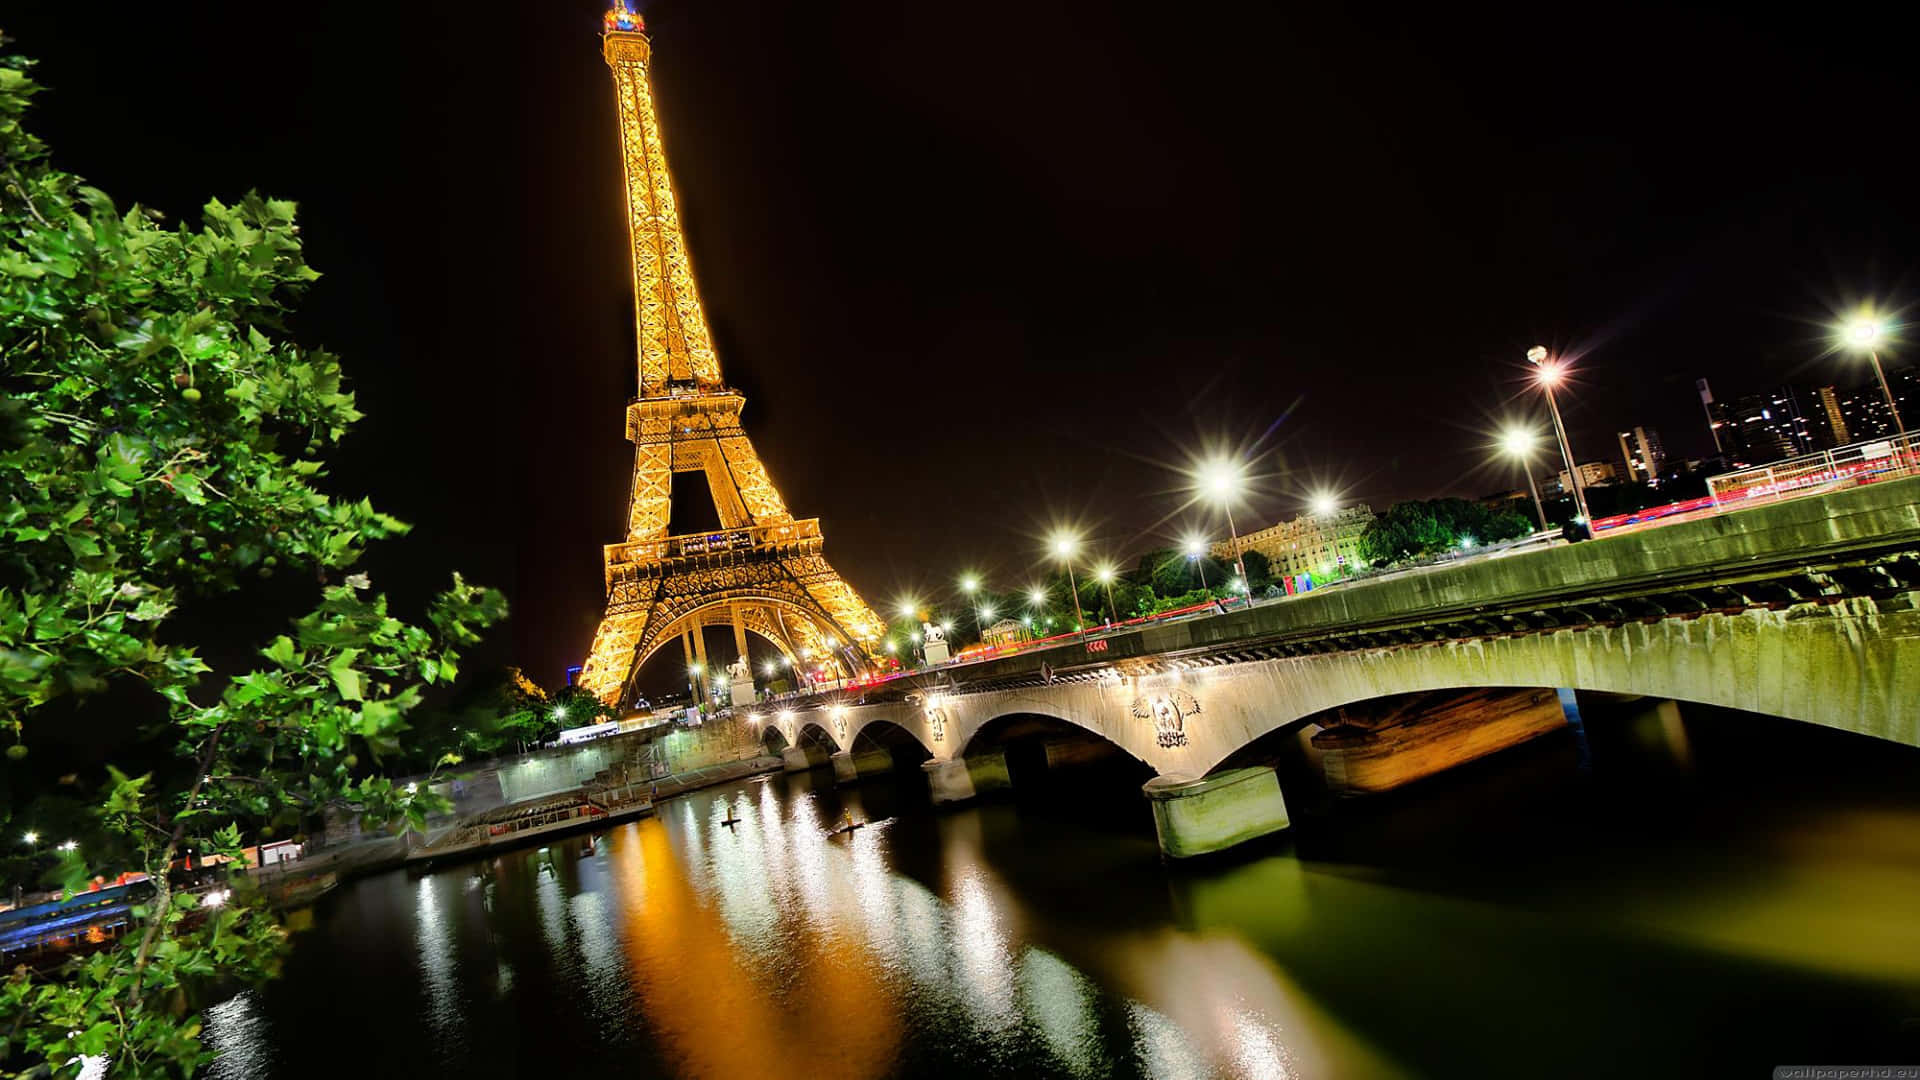 Imagendel Río Sena Con La Torre Eiffel De Fondo De Noche.